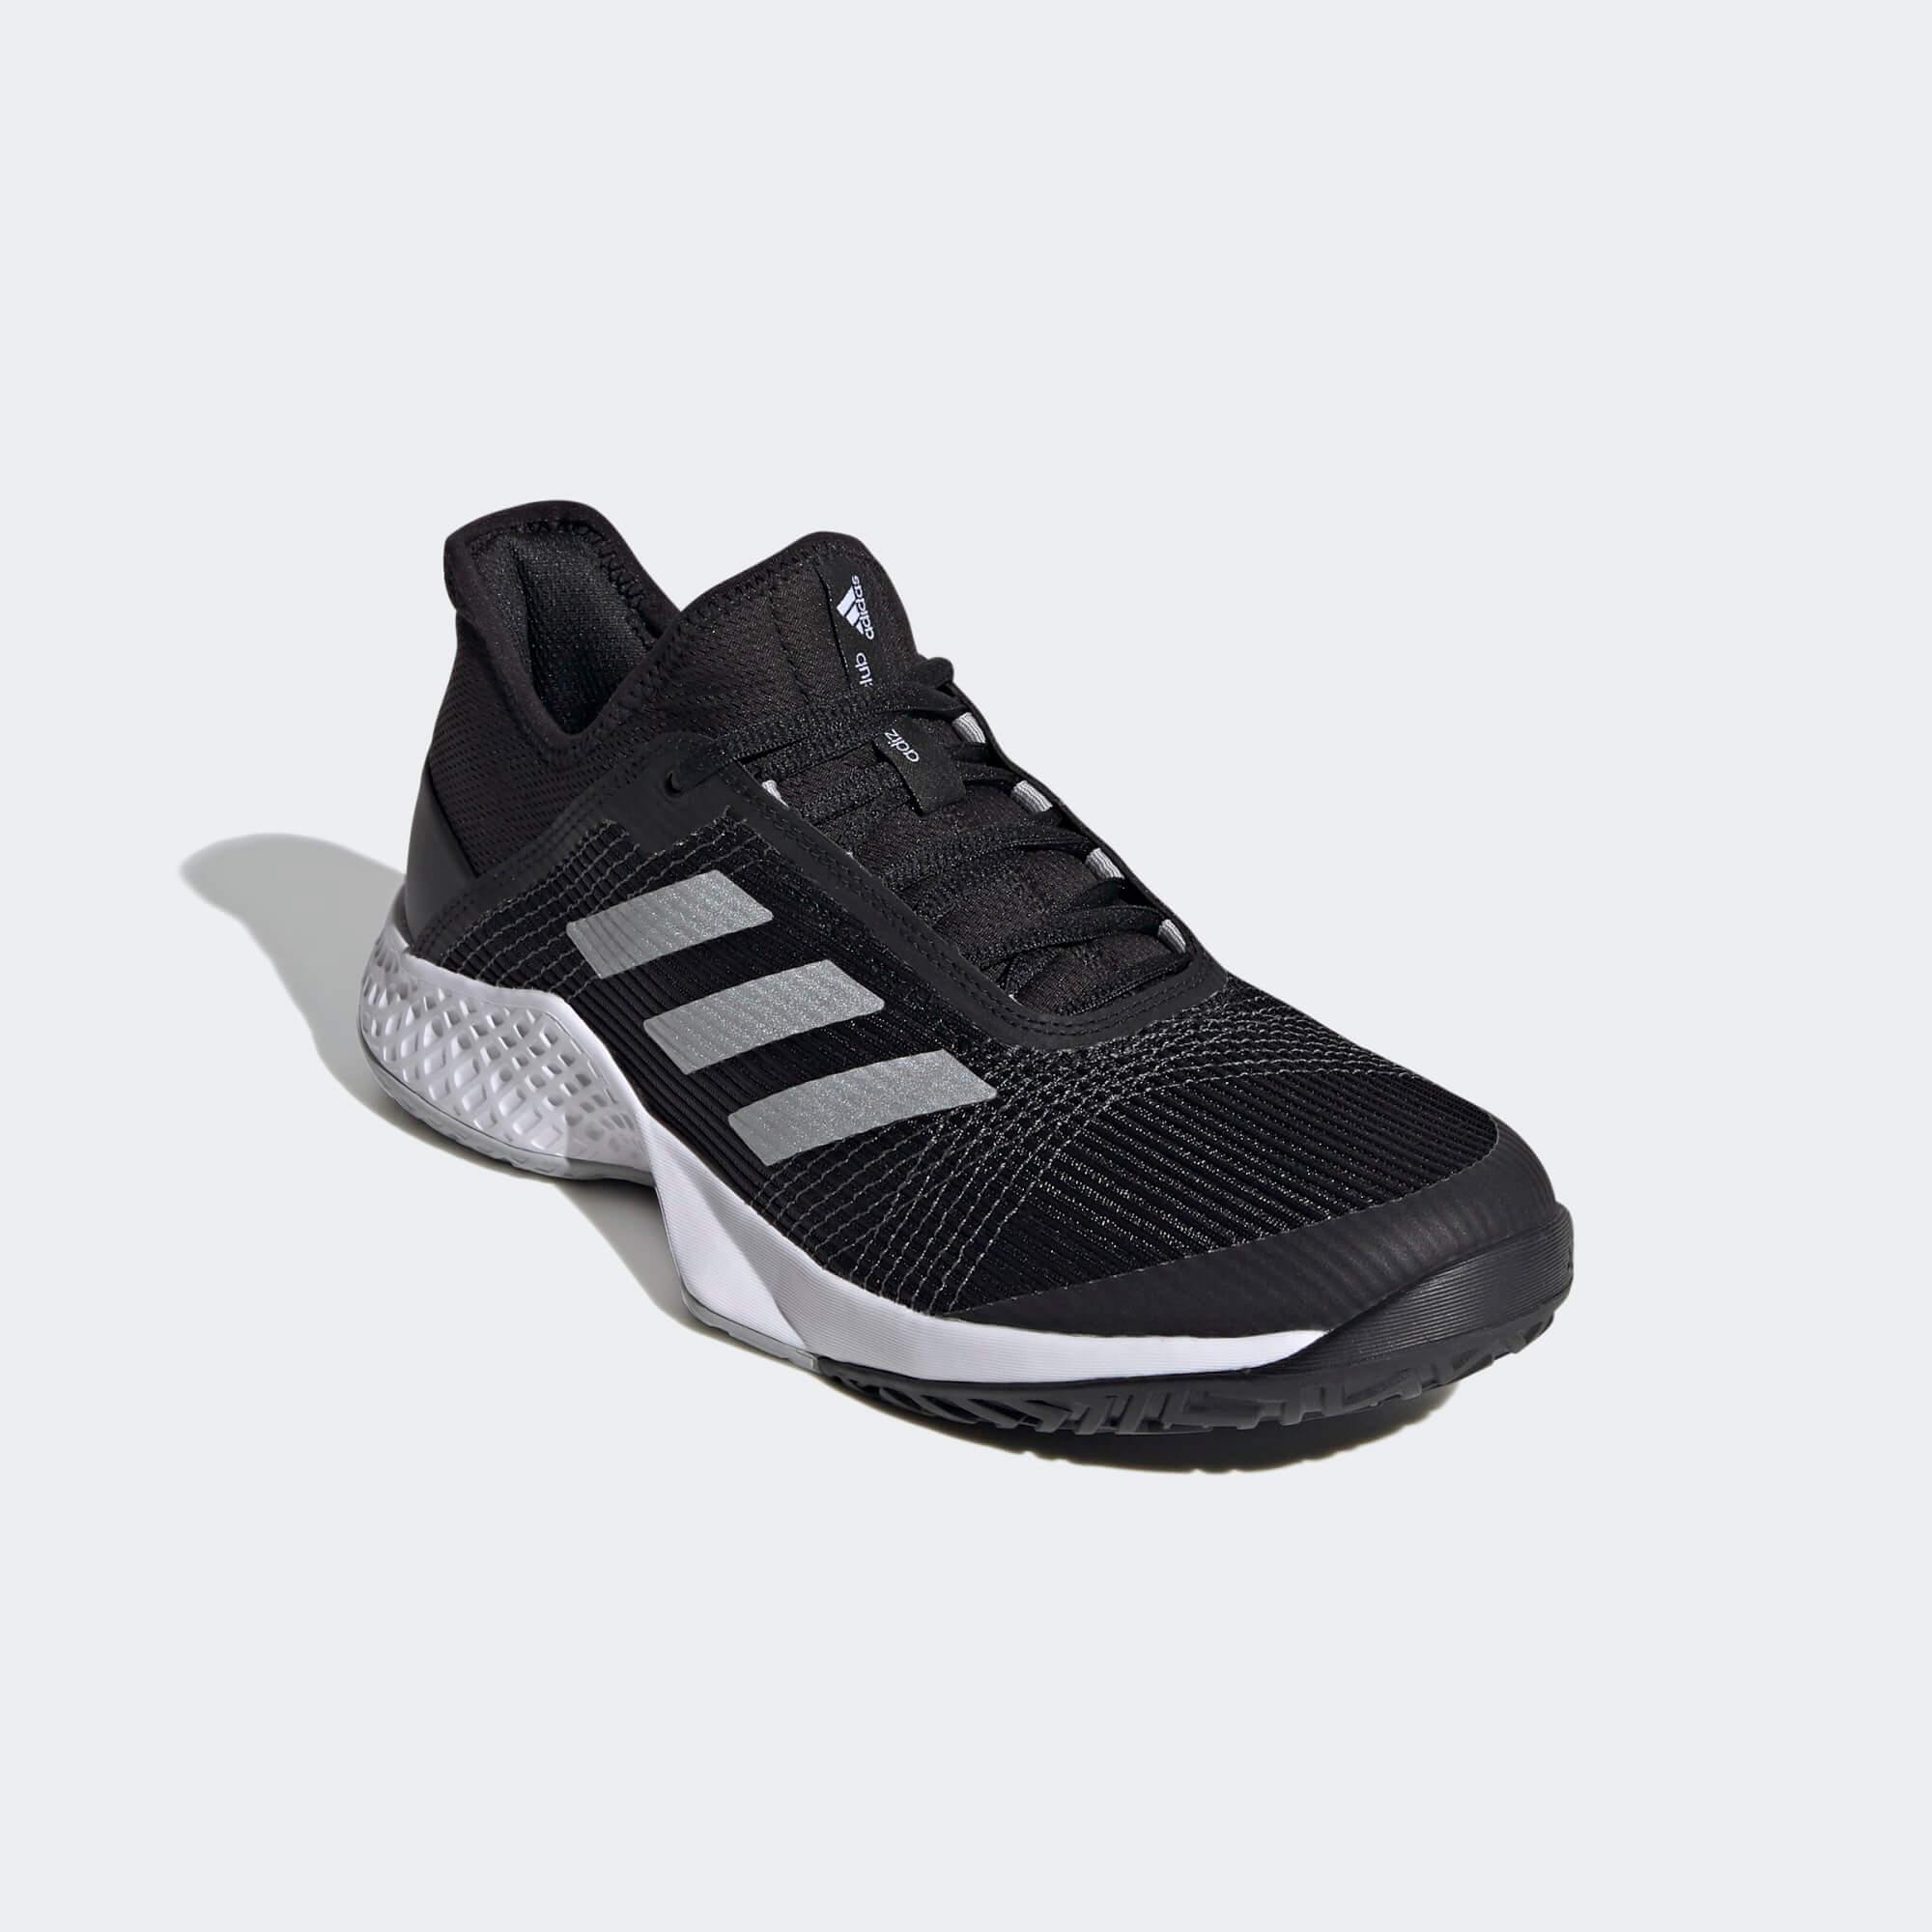 Adidas Mens Adizero Club Tennis Shoes - Black/Silver - Tennisnuts.com